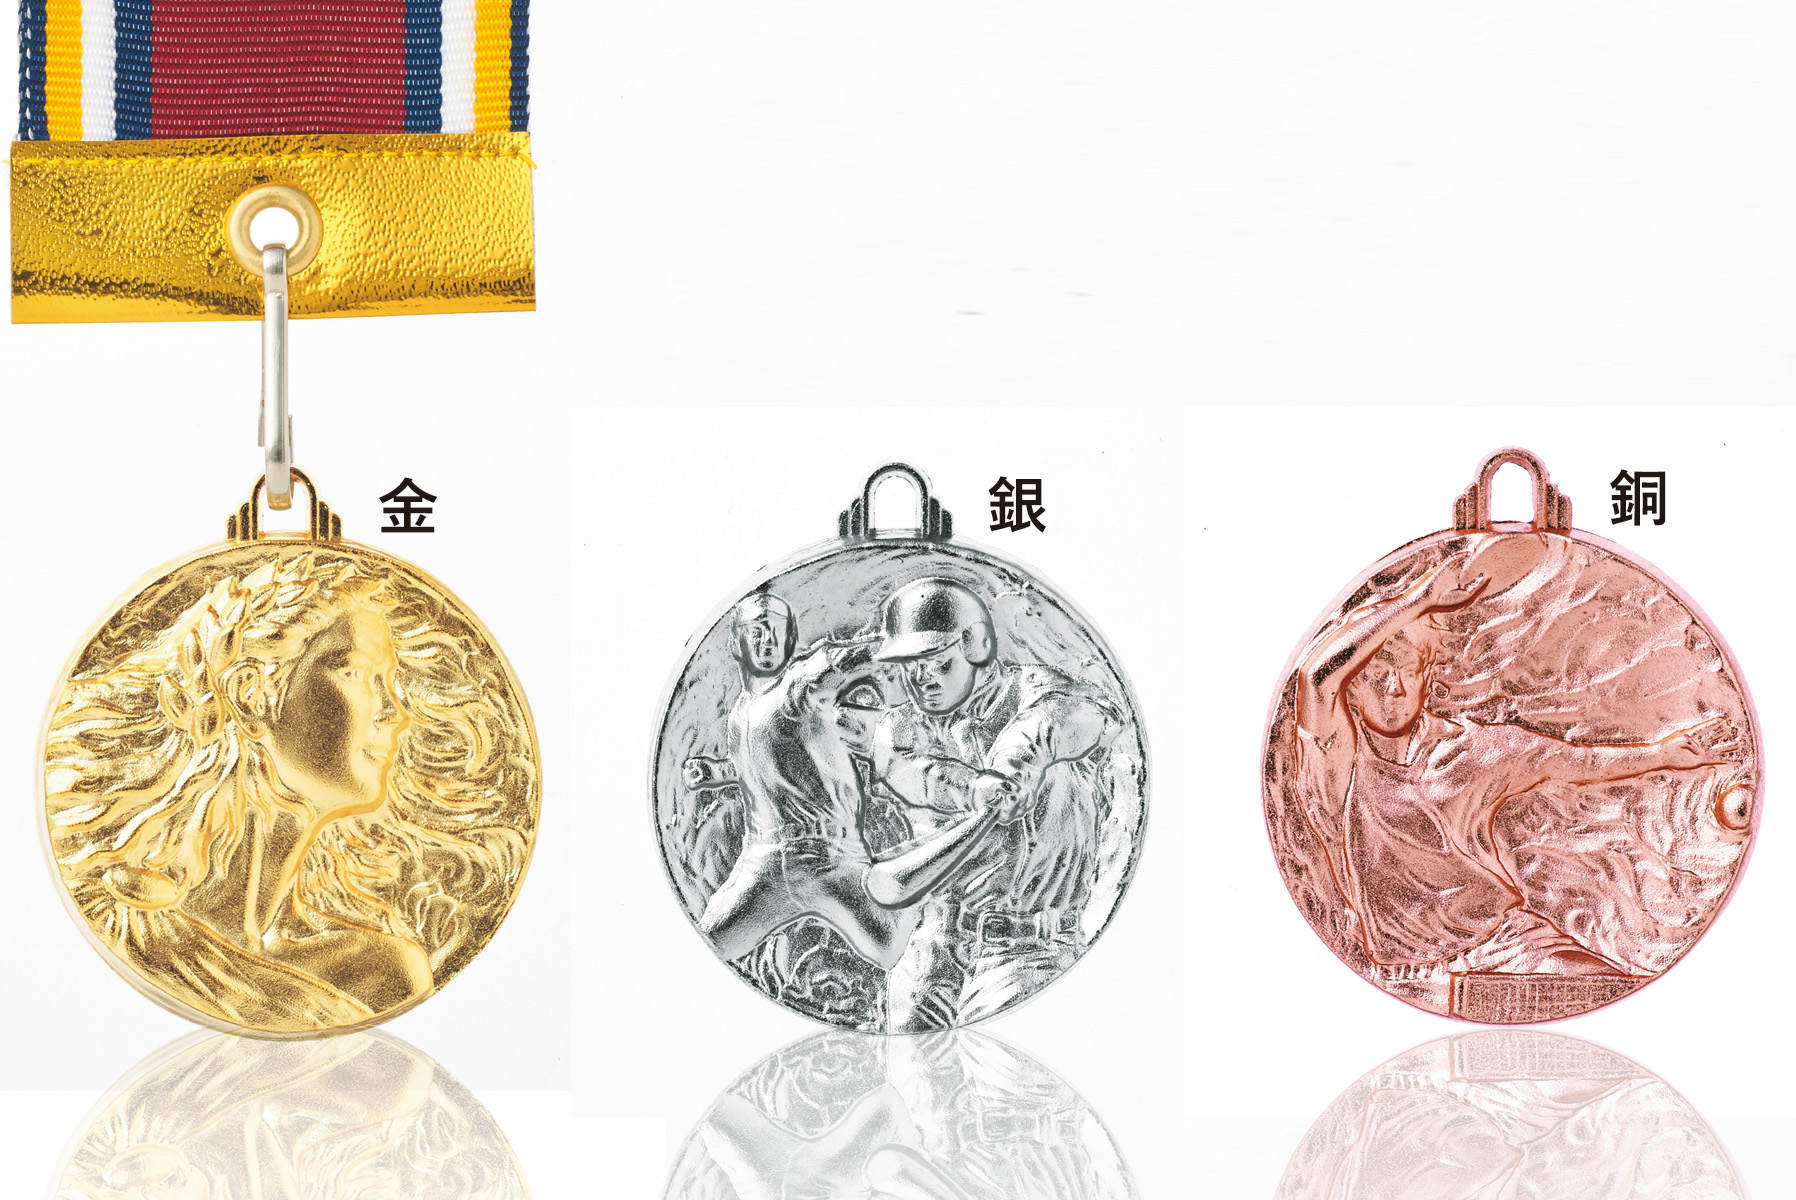 JS-MY-8443　立体感と臨場感をテーマにデザインされた表彰メダル。子供も安心して使えるベーシックなサイズなのがうれしいメダル。